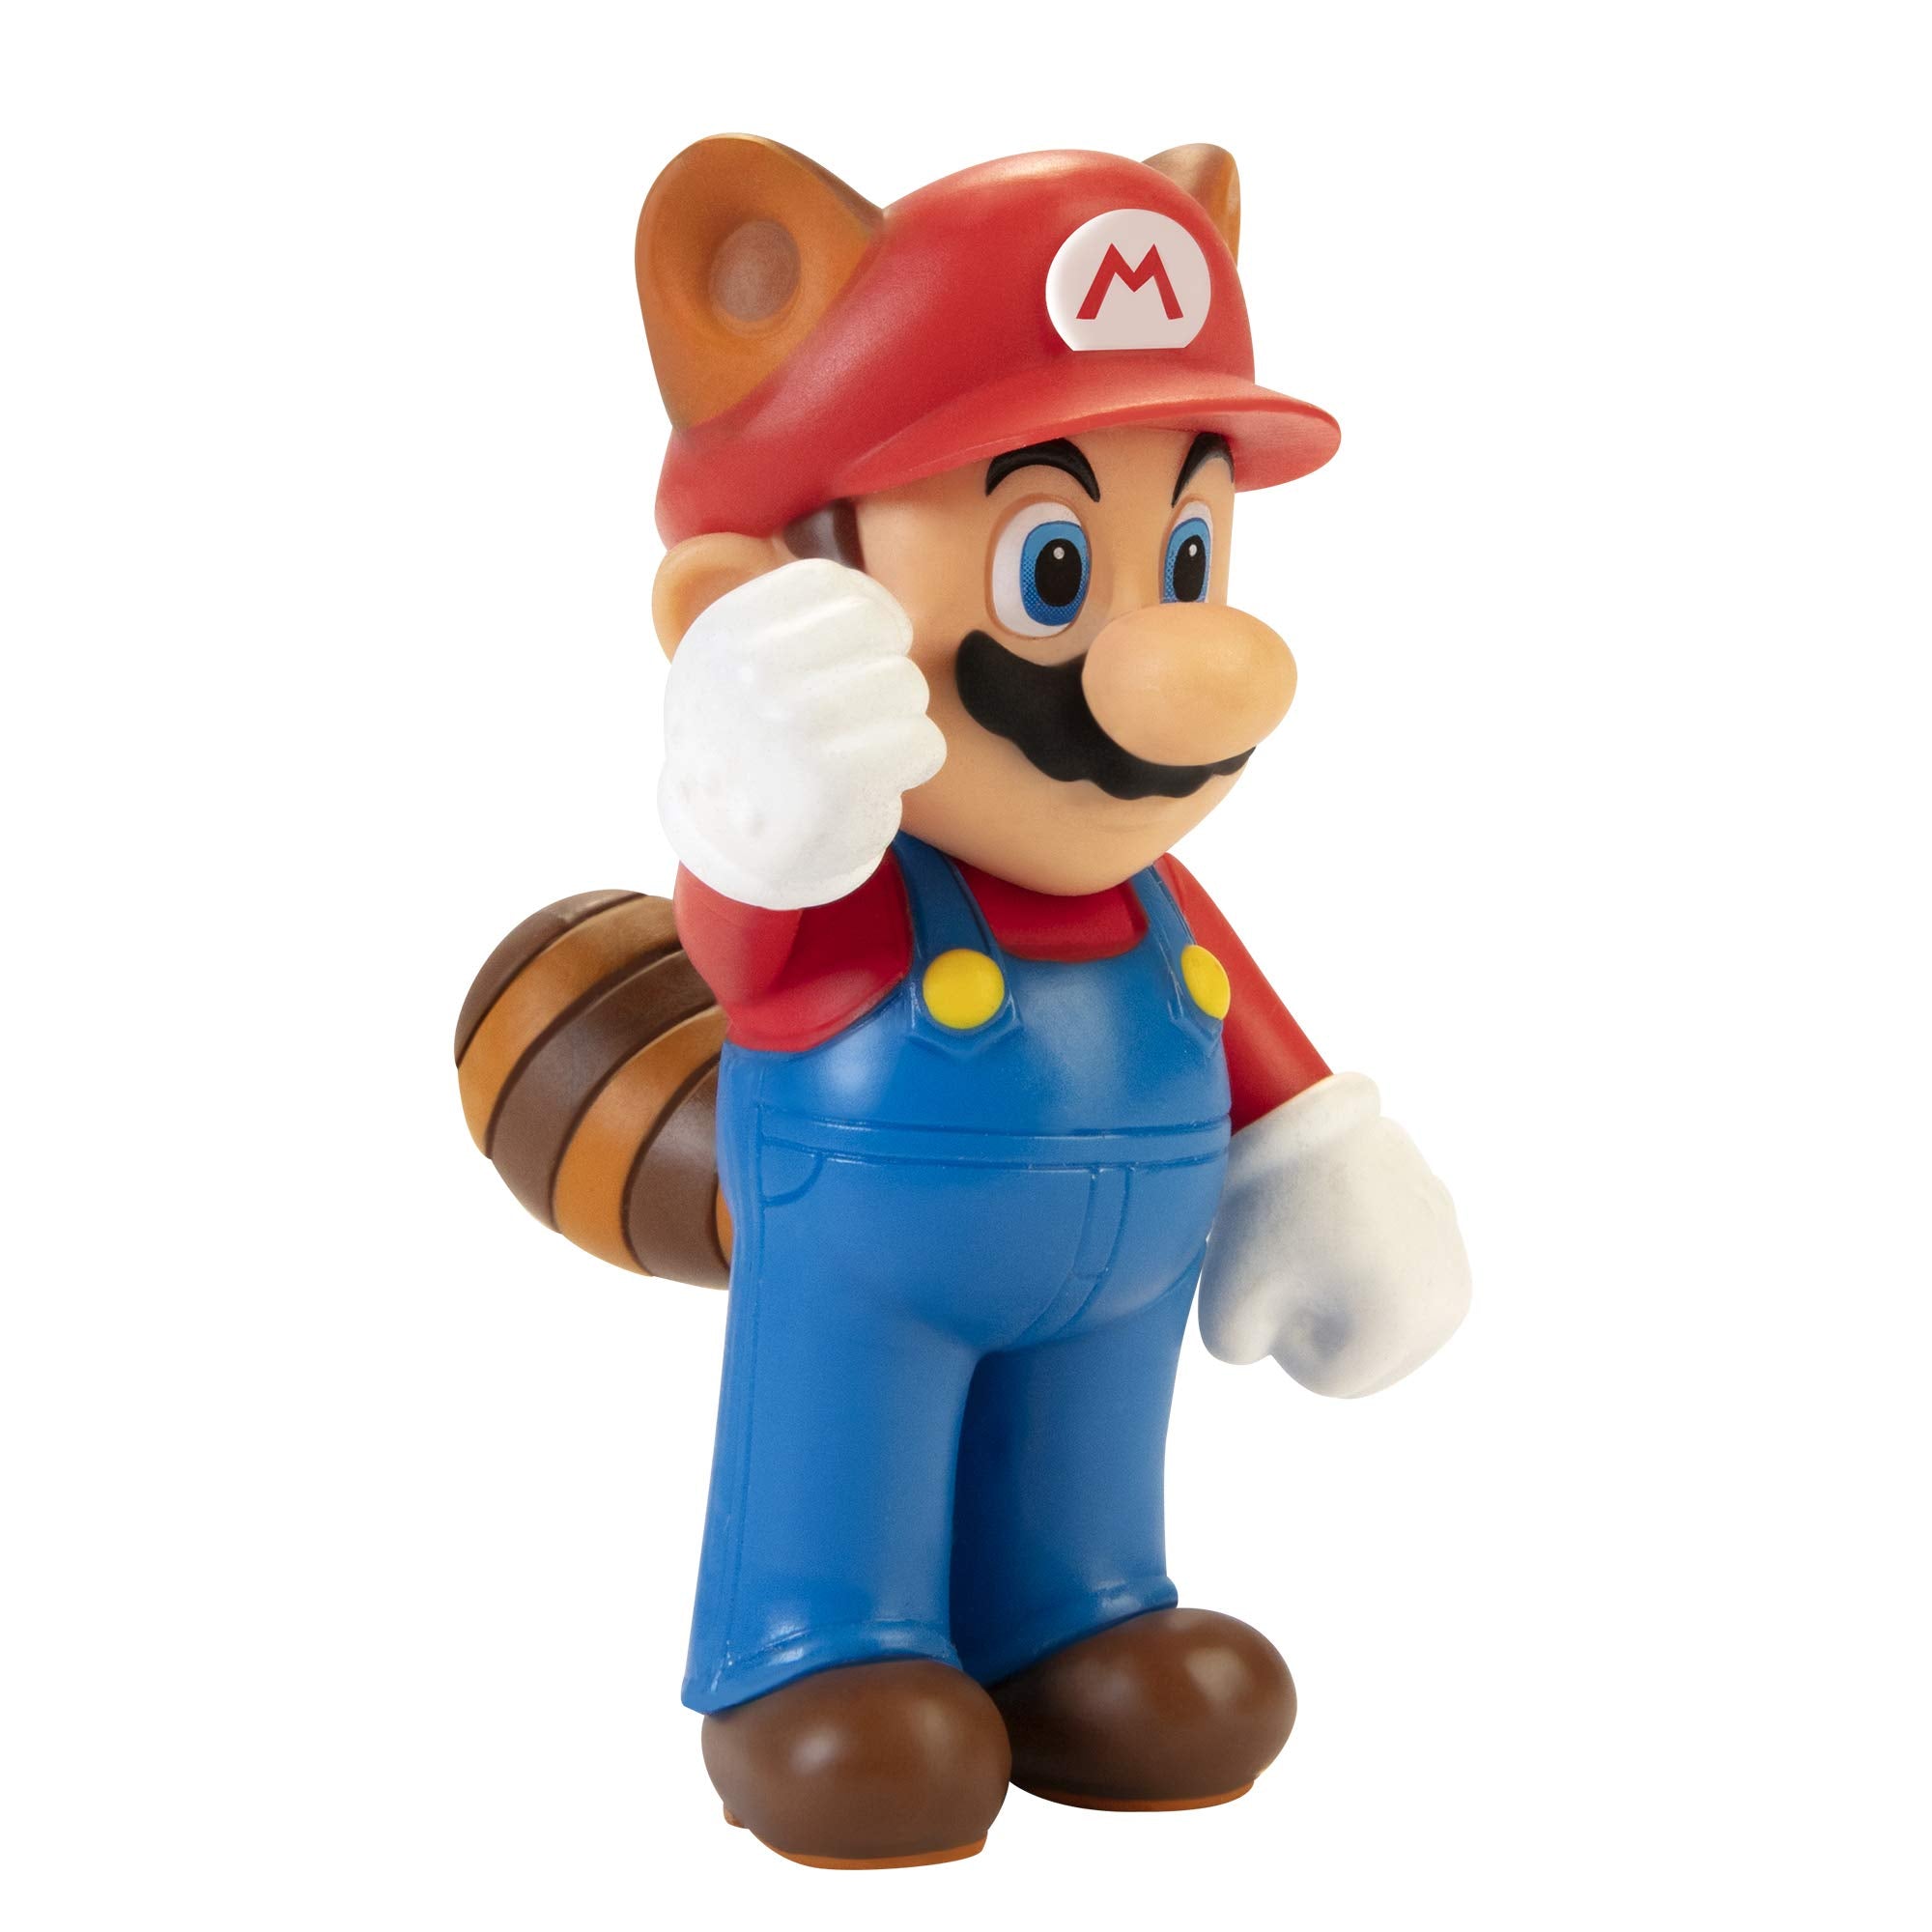 Super Mario 2.5" Figure Assorted